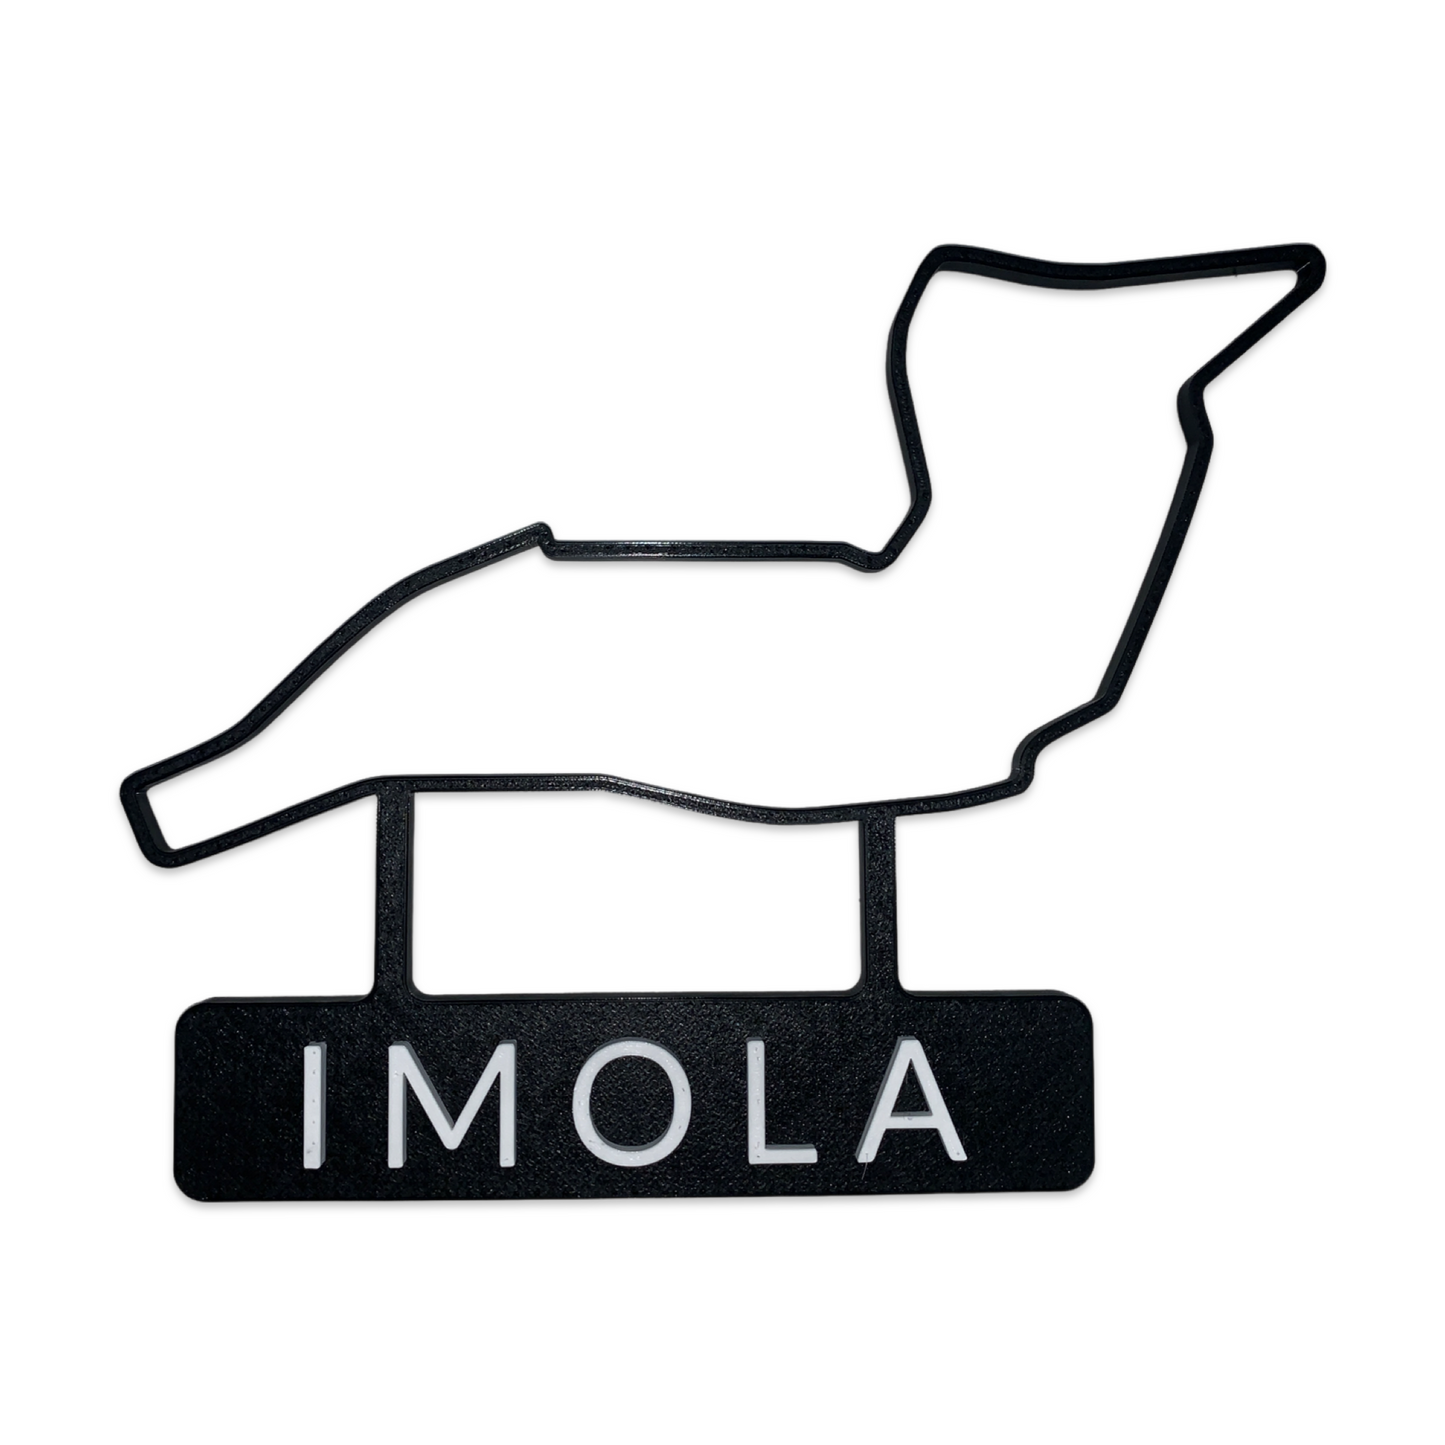 3D printed F1 tracks 2021 season - Imola